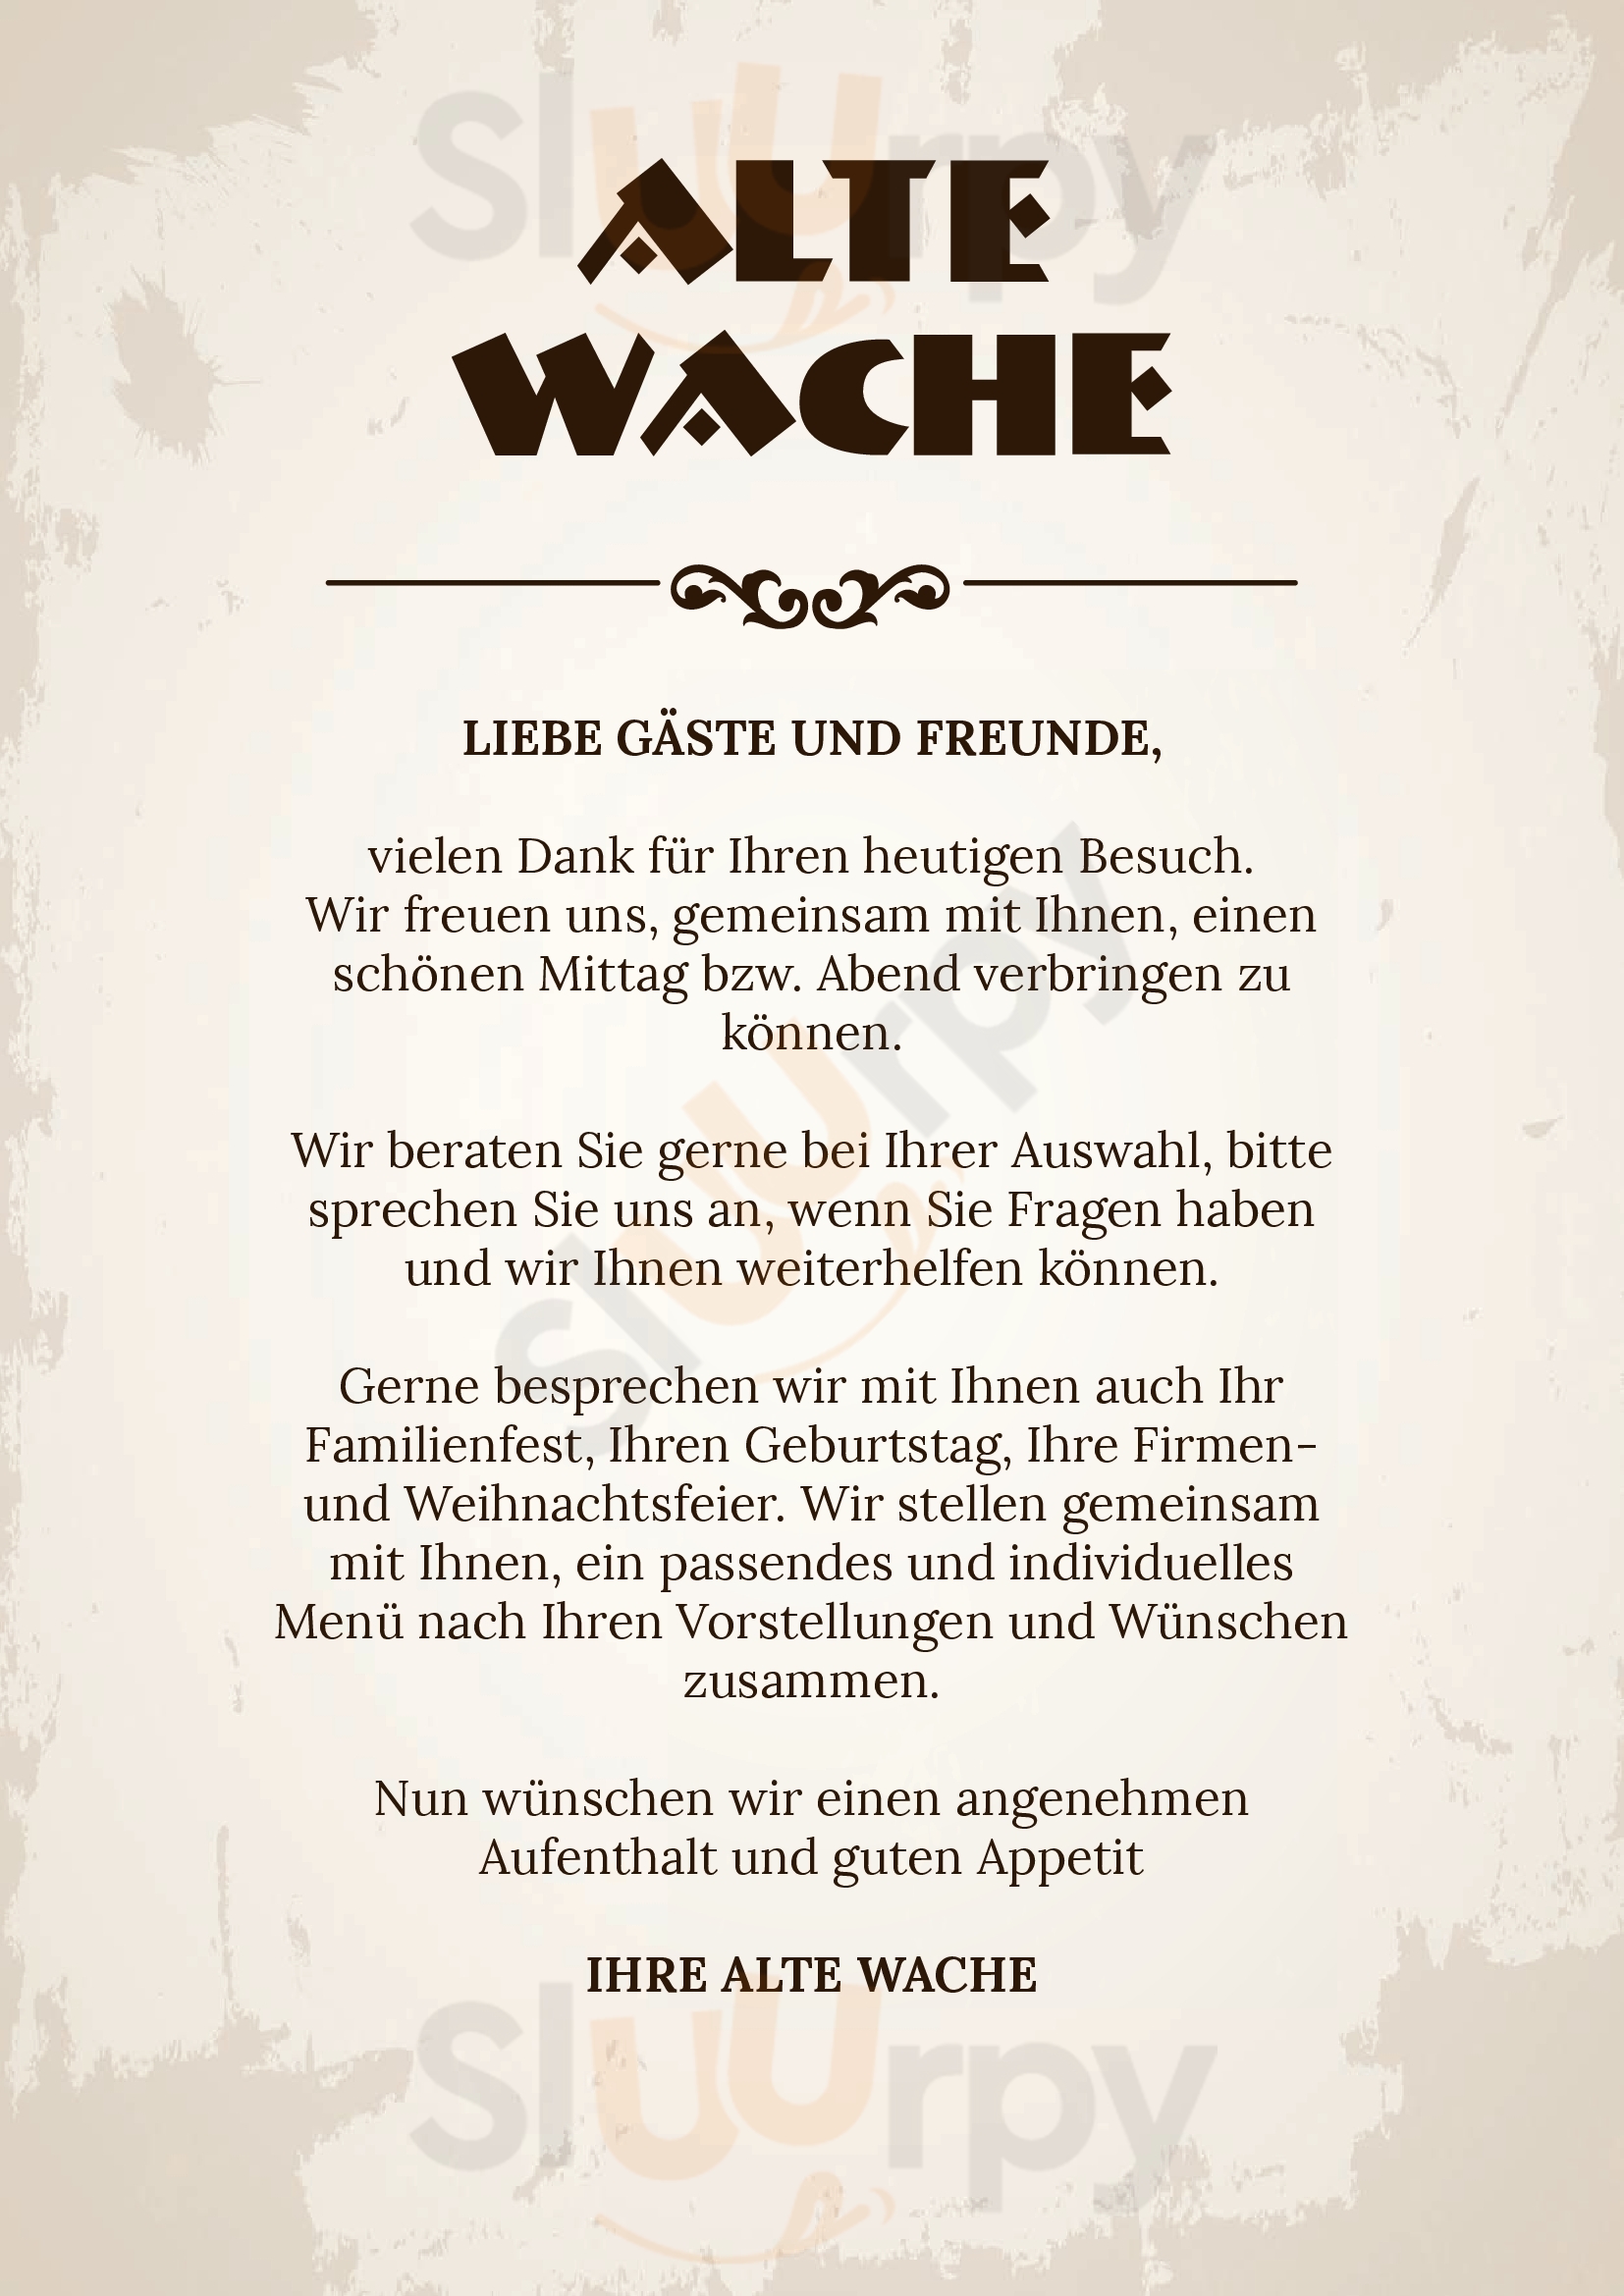 Restaurant Bar Alte Wache Stuttgart Menu - 1